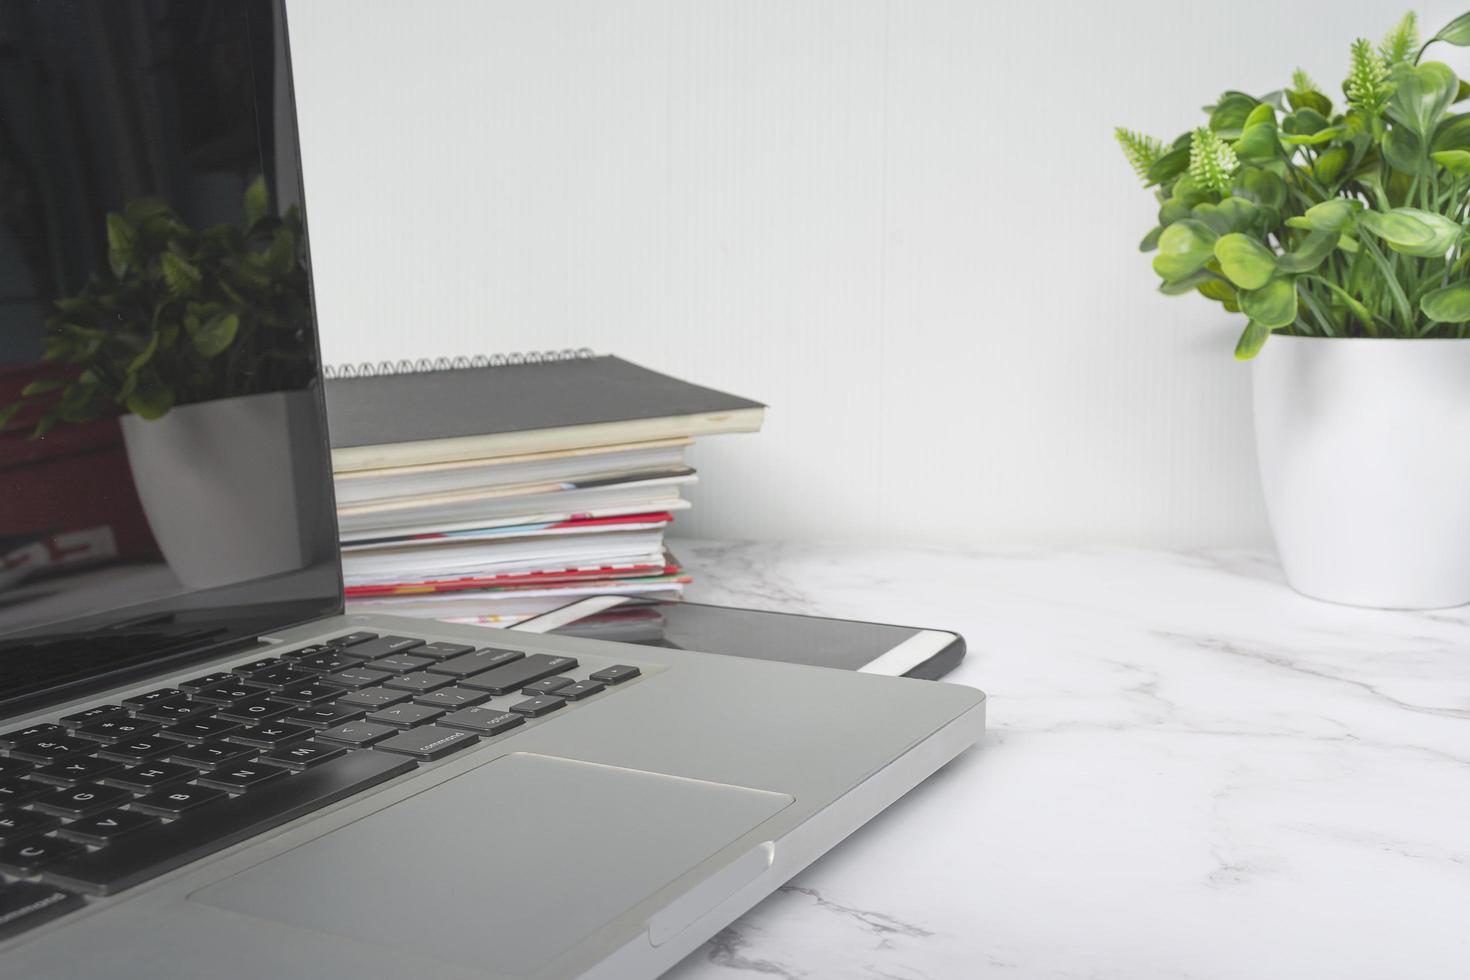 ordinateur portable sur table blanche avec plante en pot, cahiers et smartphone. photo